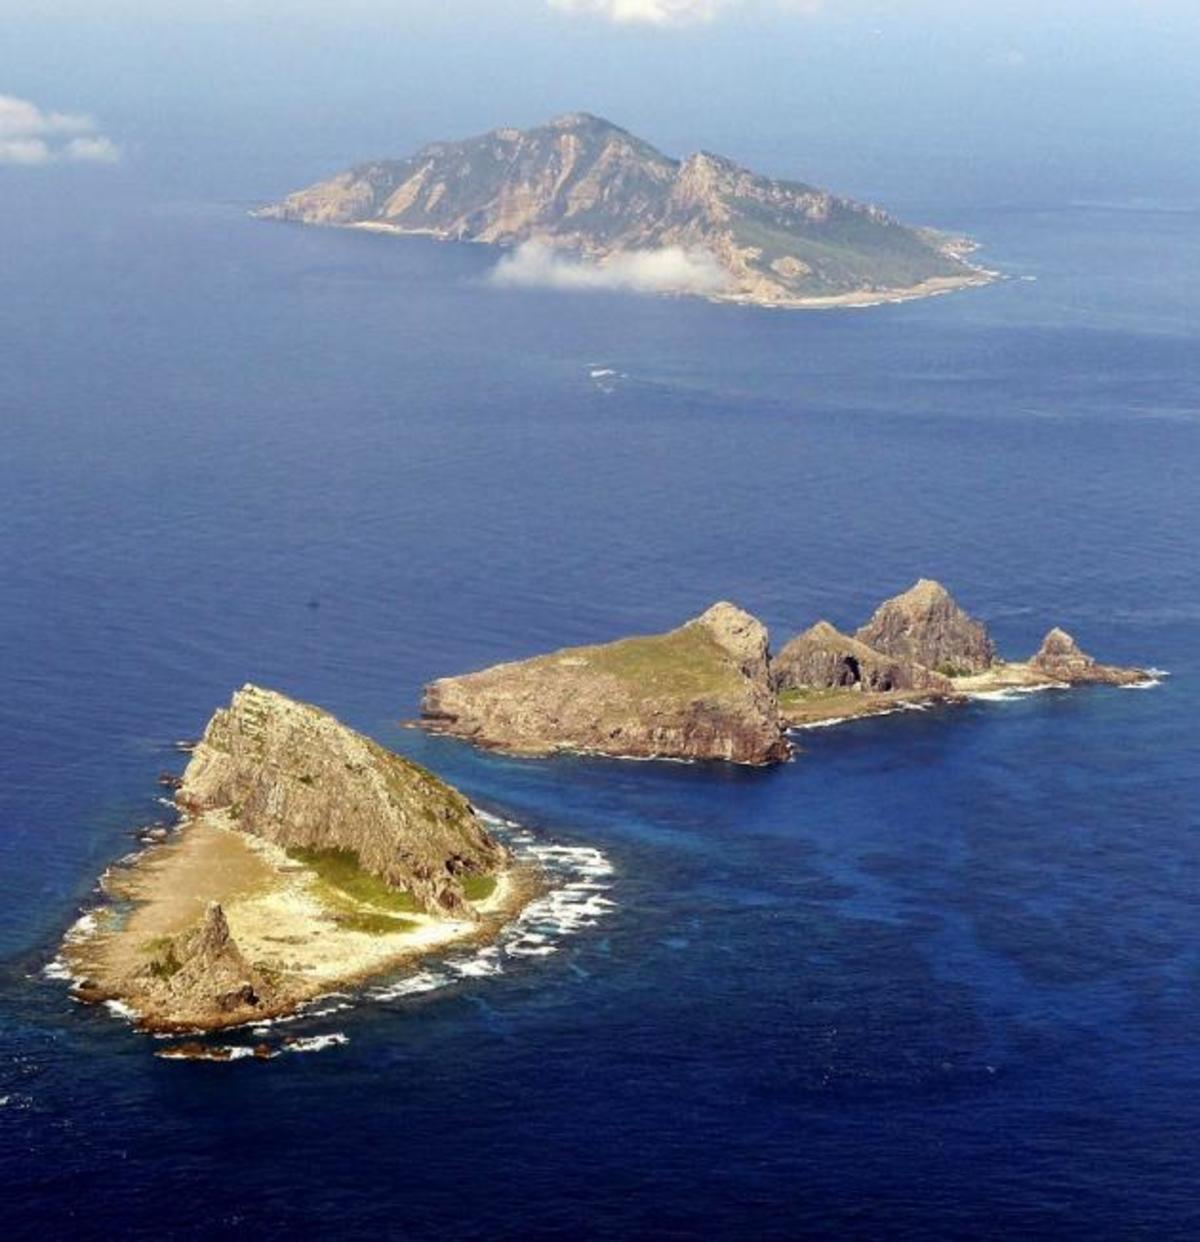 Αυτά είναι …τα Ίμια Κίνας-Ιαπωνίας. Ένταση στην ανατολική θάλασσα της Κίνας